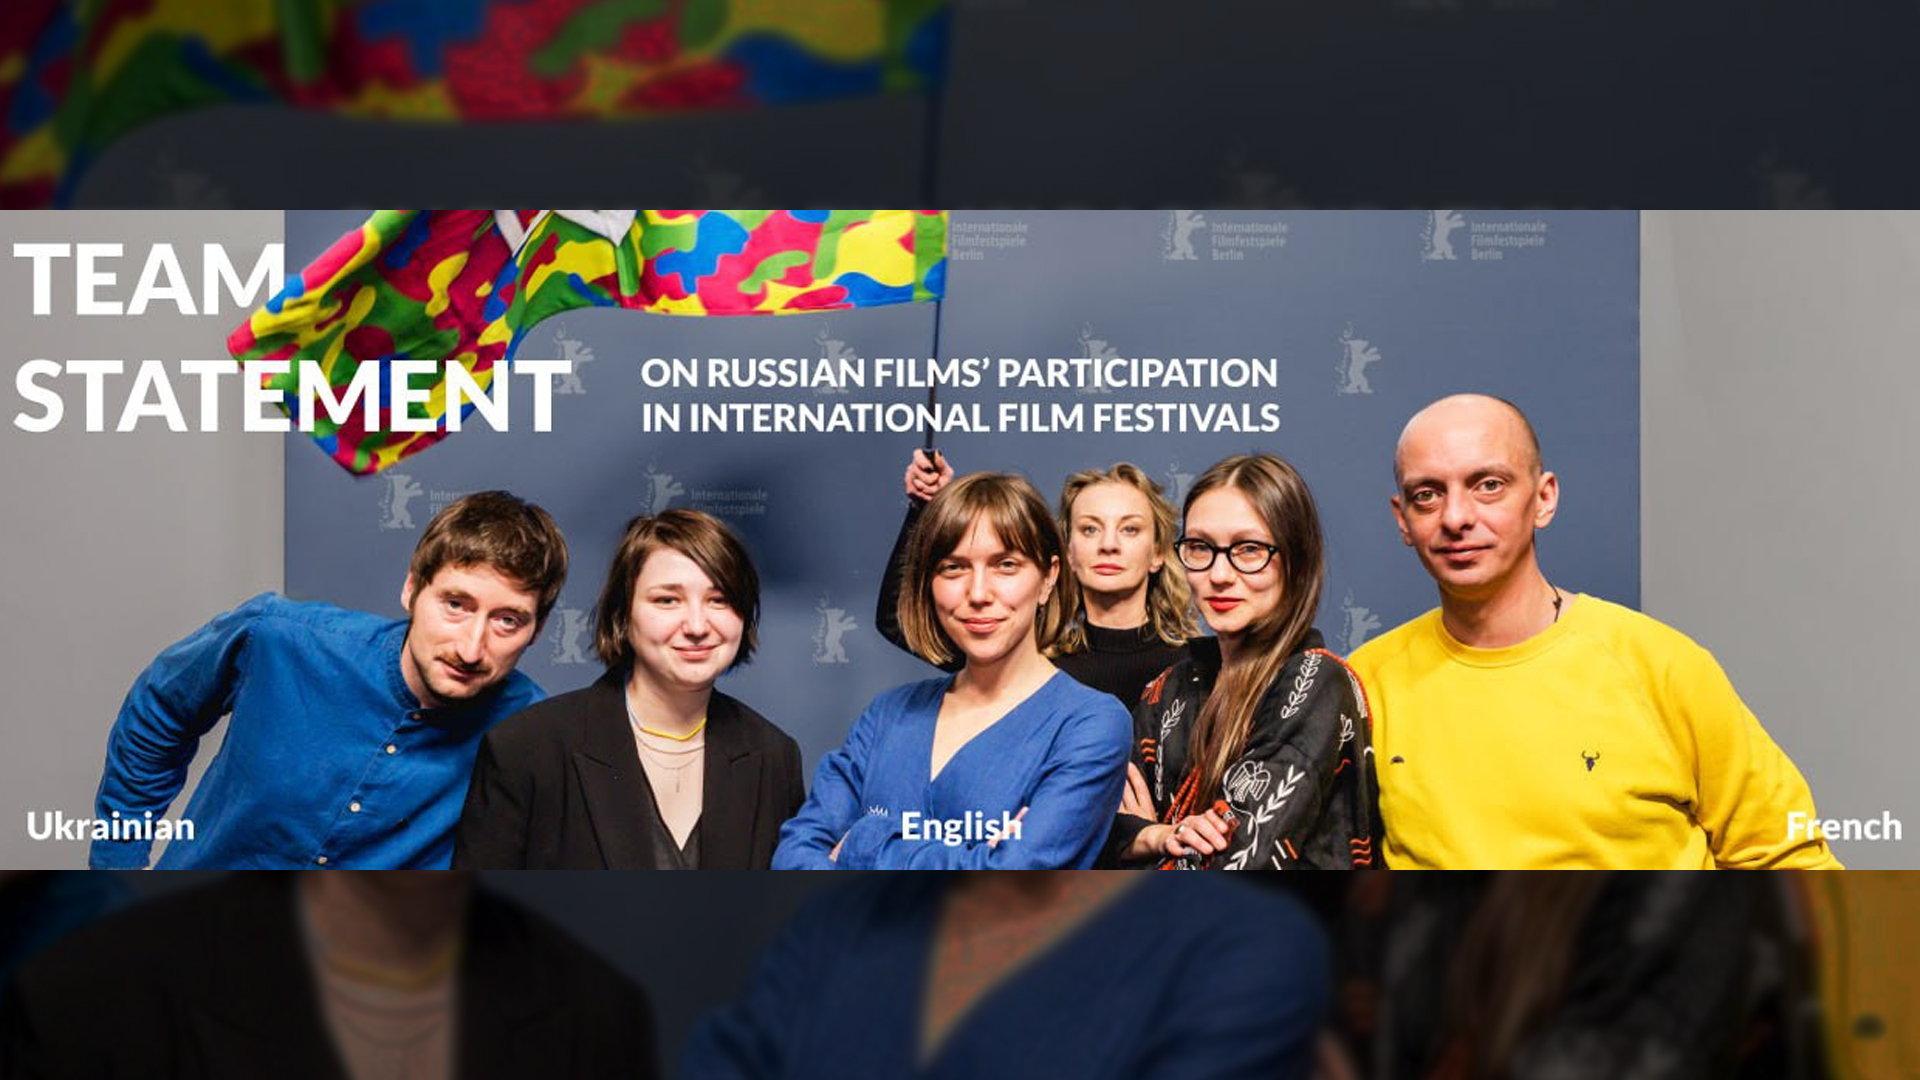 Déclaration de l’équipe de “It’s A Date” sur le retrait des festivals qui présentent des films russes